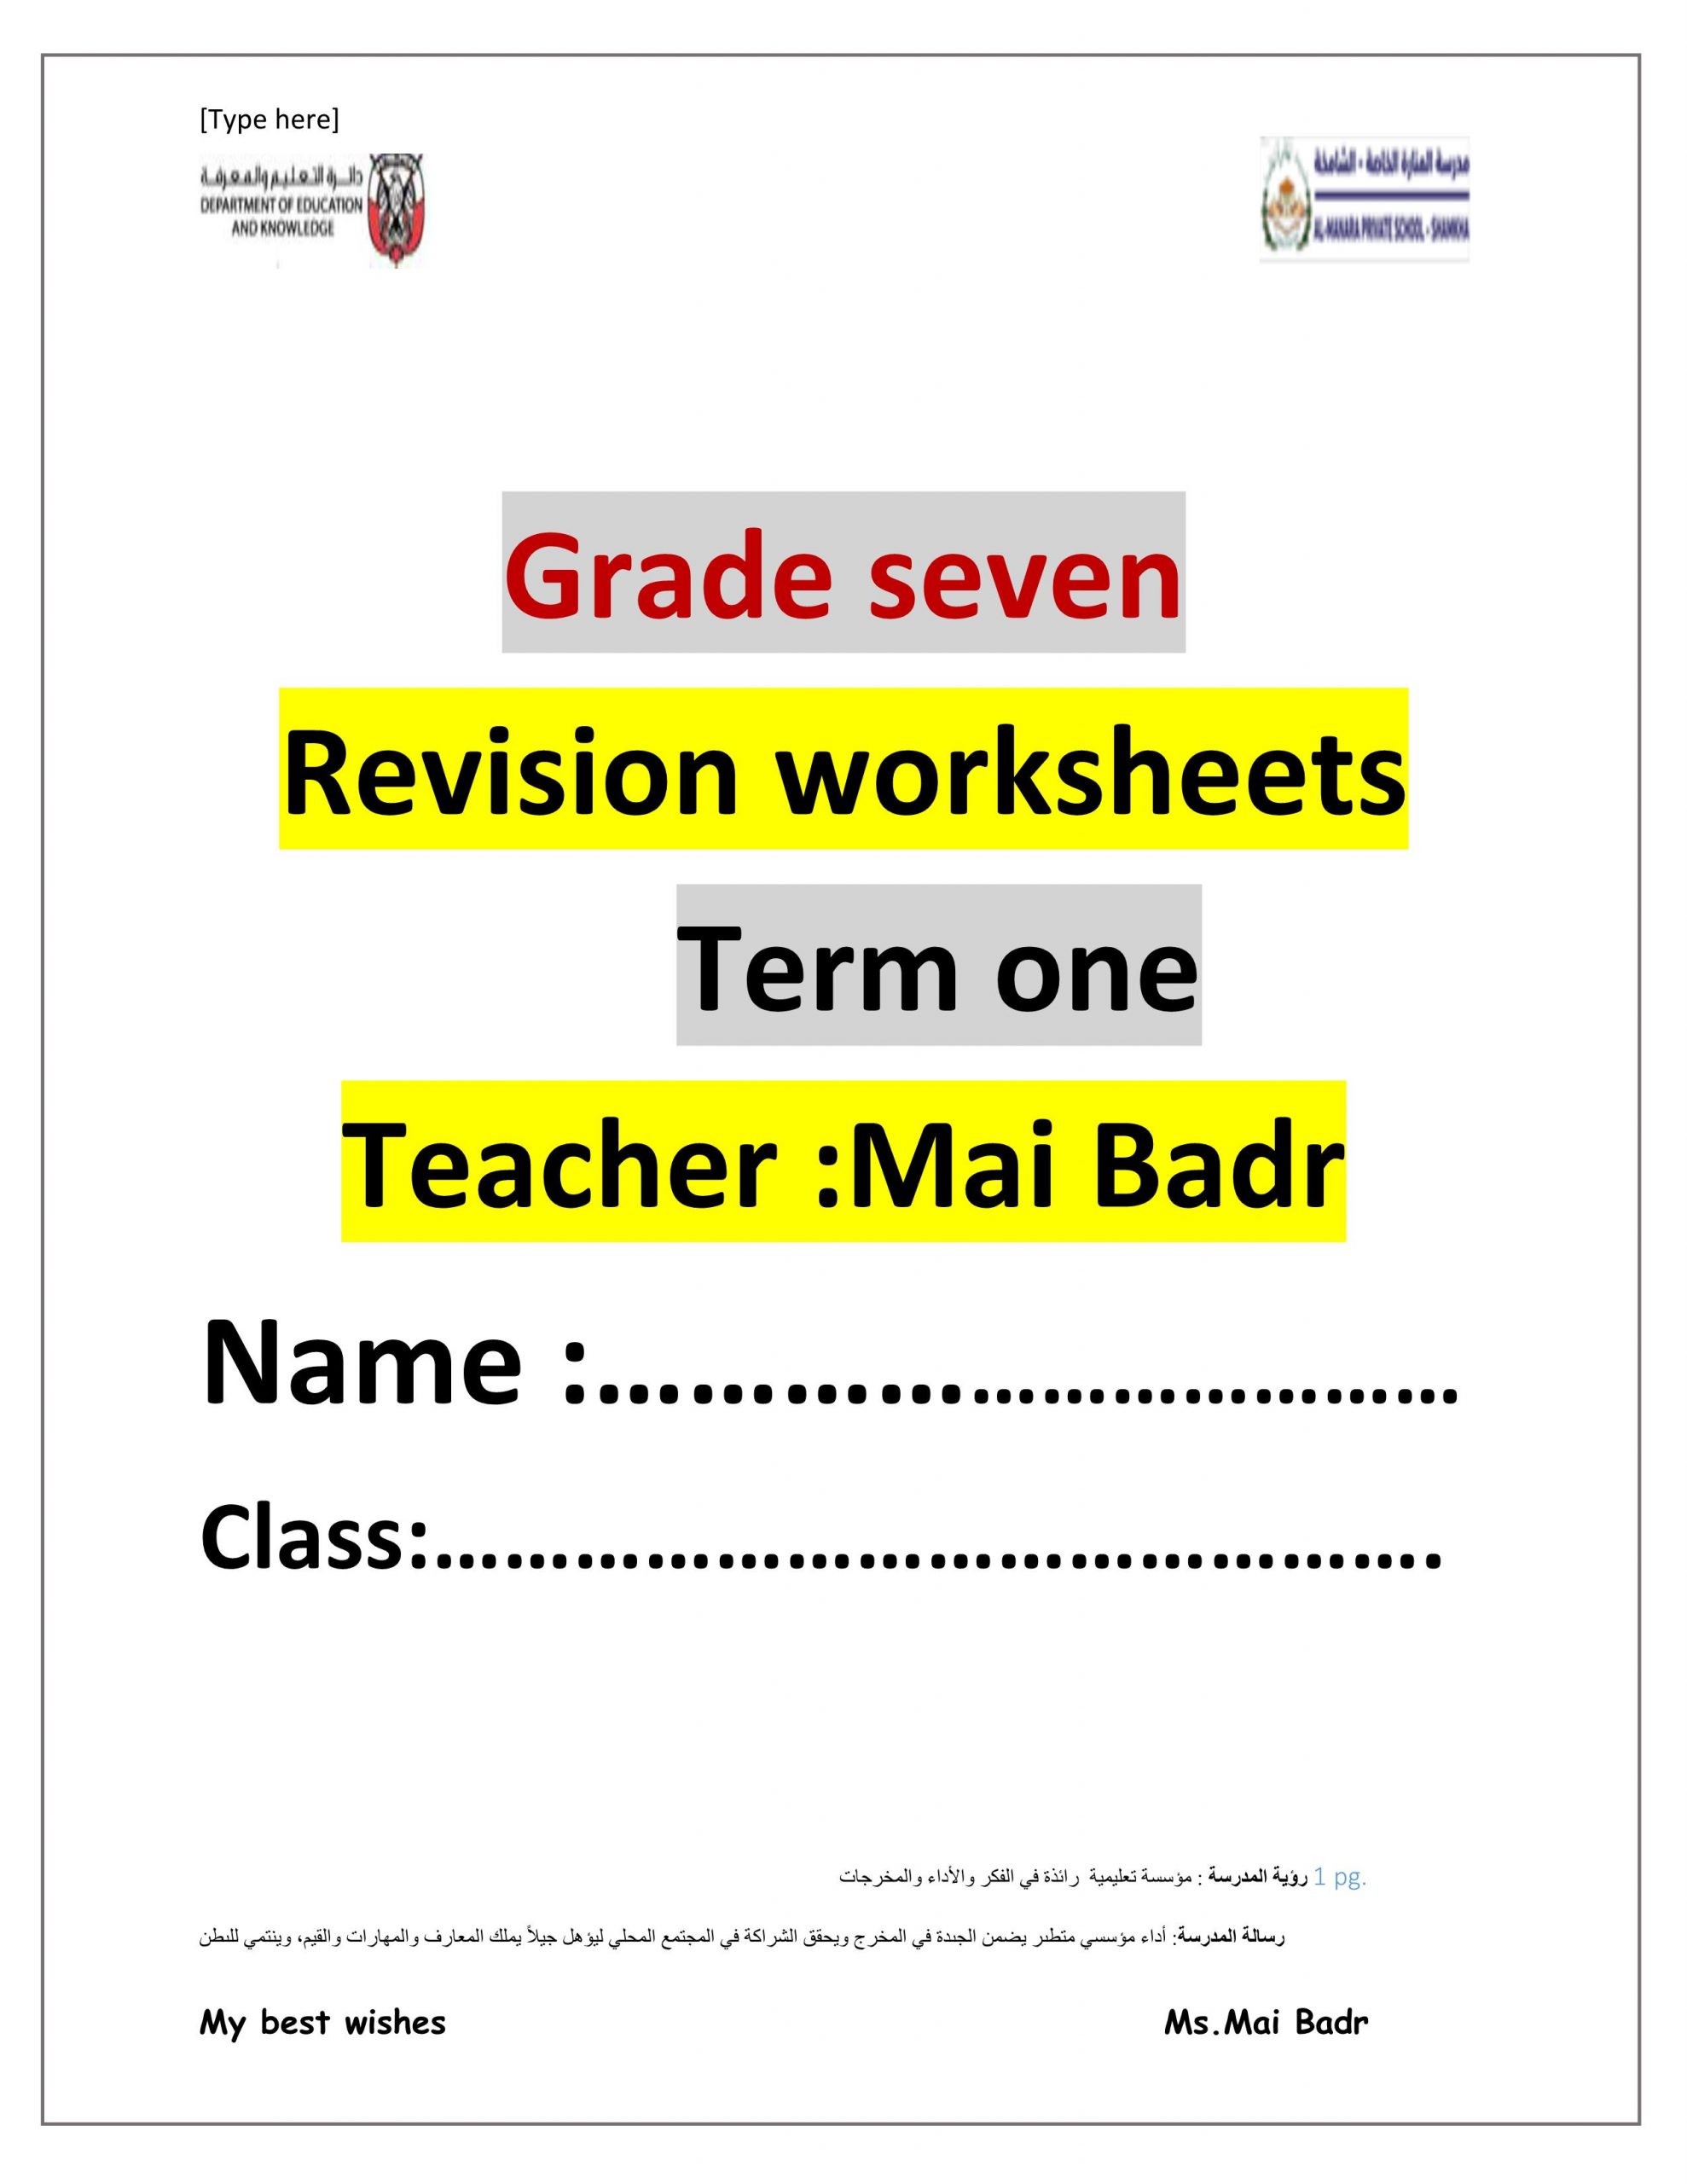 اوراق عمل Revision worksheets الصف السابع مادة اللغة الانجليزية